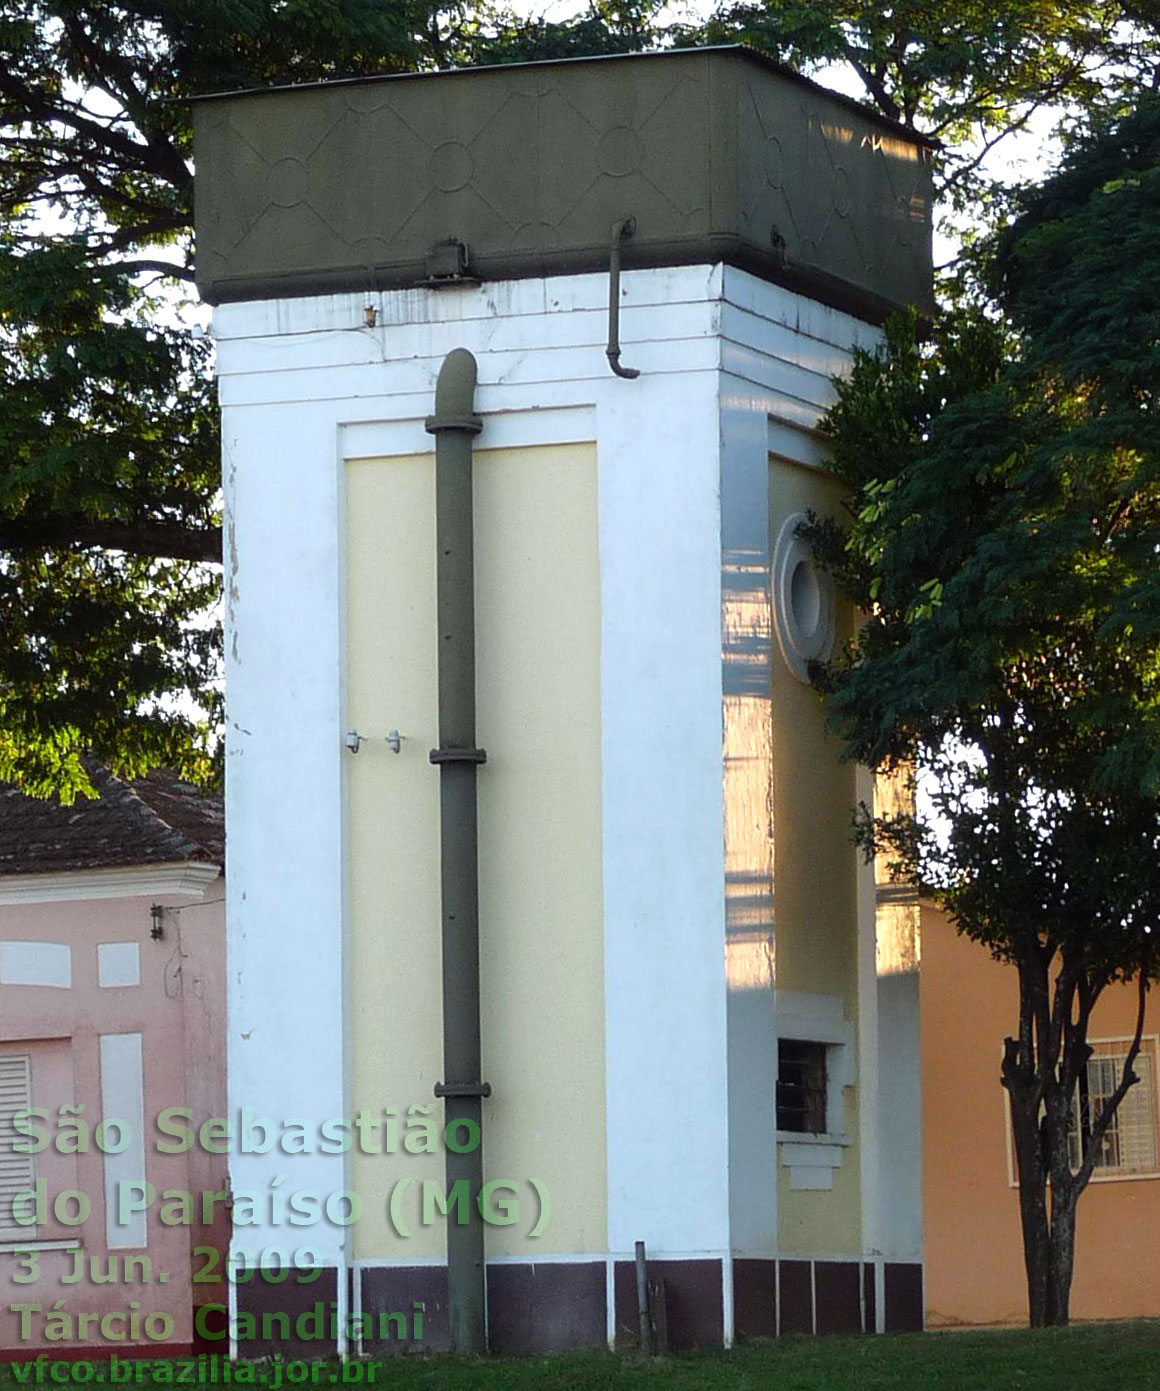 Detalhe da caixa d'água da estação ferroviária de São Sebastião do Paraíso em 2009